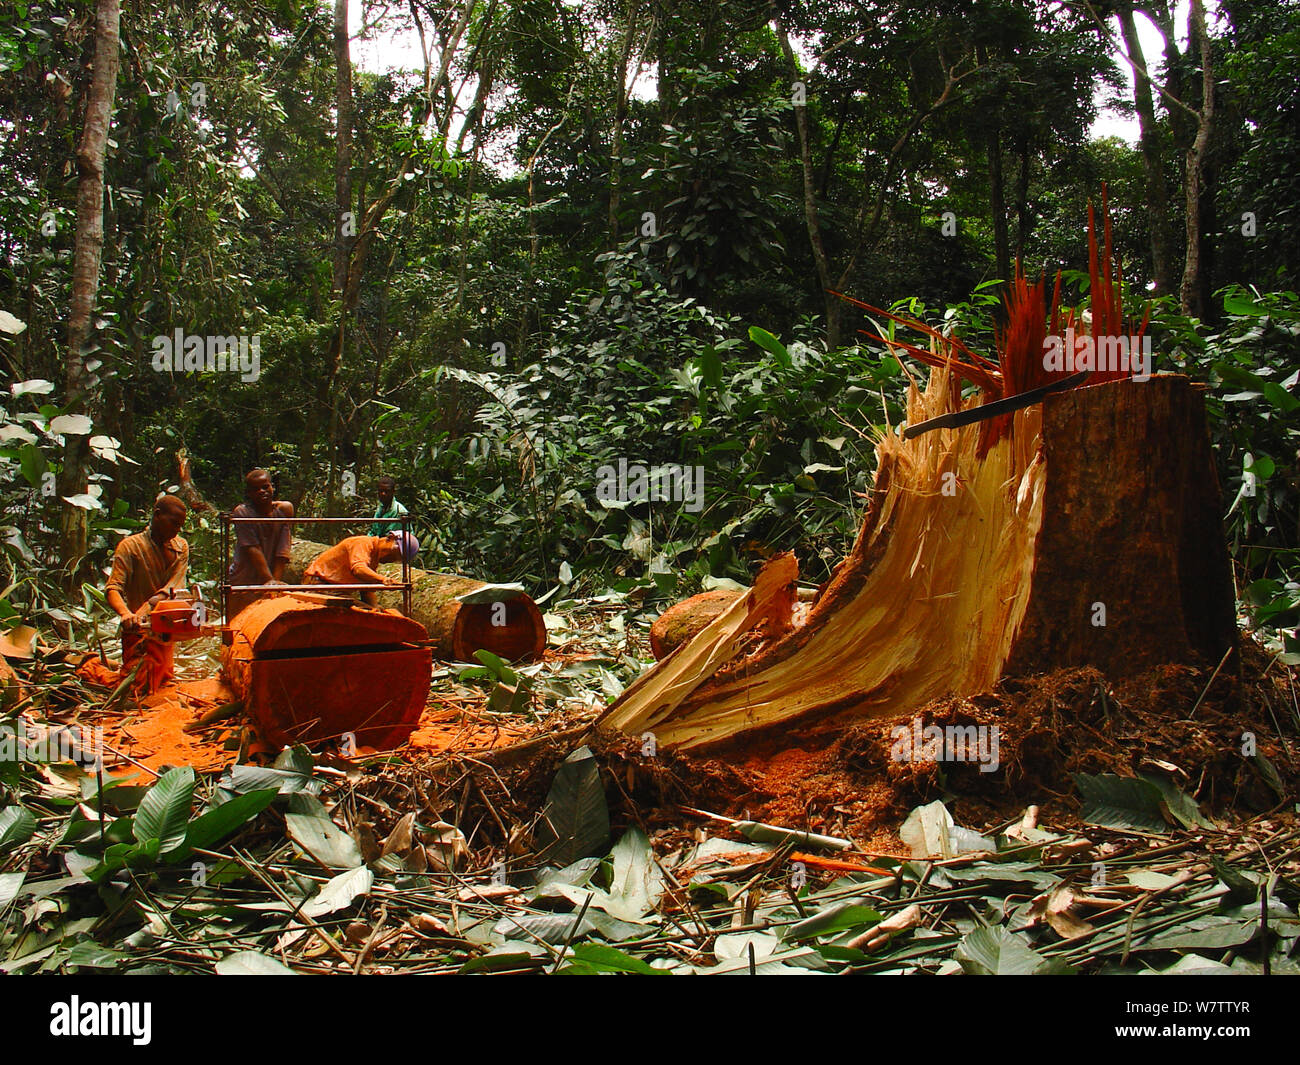 Selva africana de minas, hombres serrar troncos de árboles de madera dura para hacer tablones. Al sur del Parque Nacional, Mbomo Odzala-Kokoua, República del Congo, mayo de 2005. Foto de stock